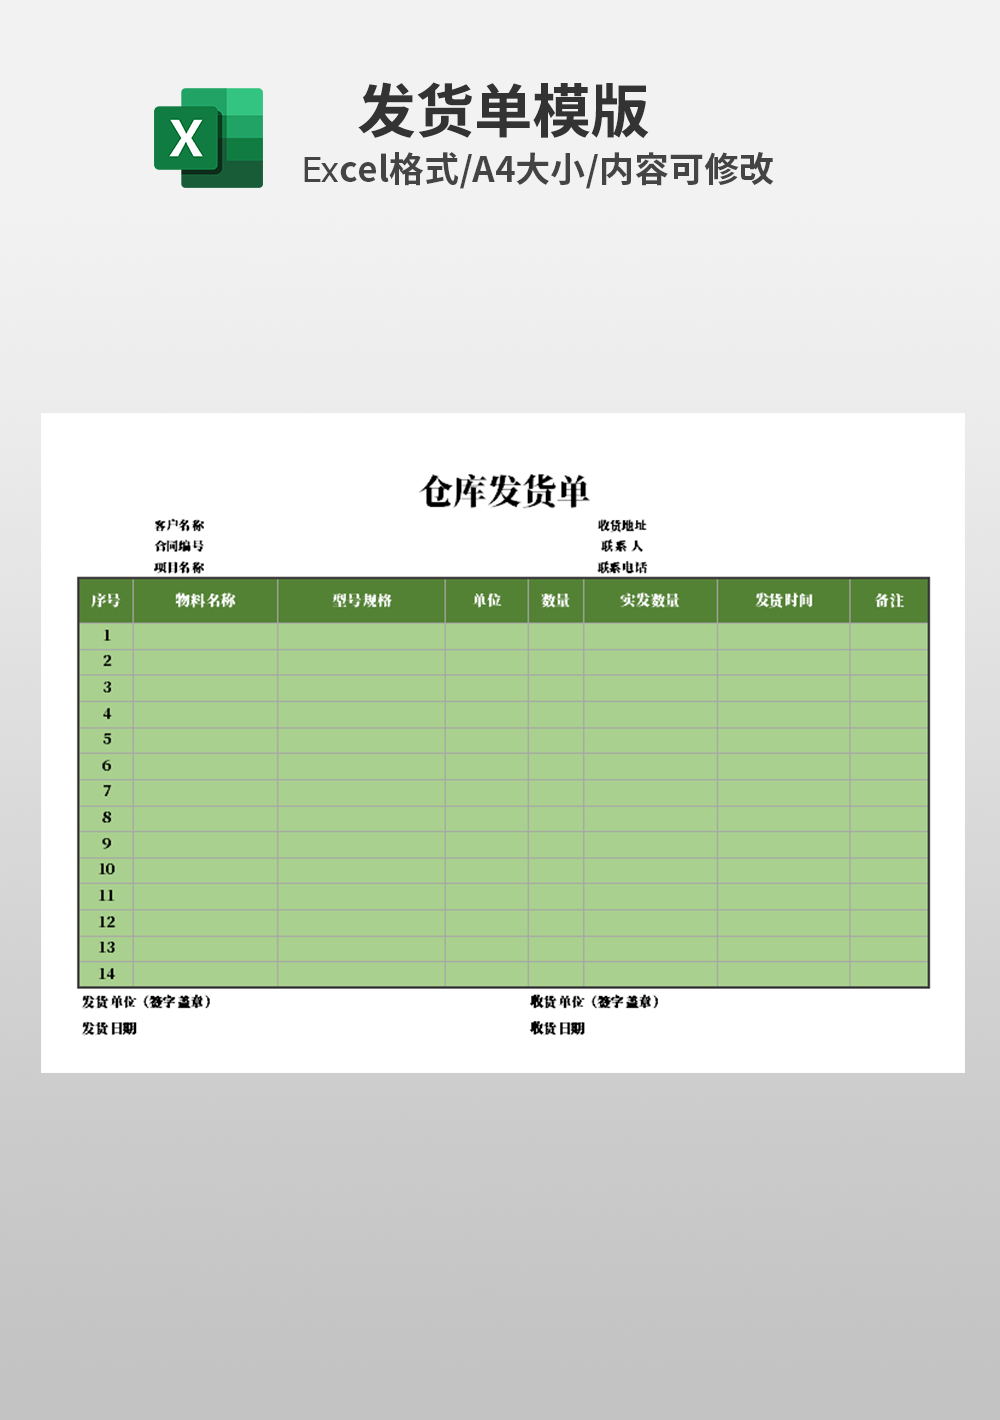 仓库日发货单明细表Excel模板